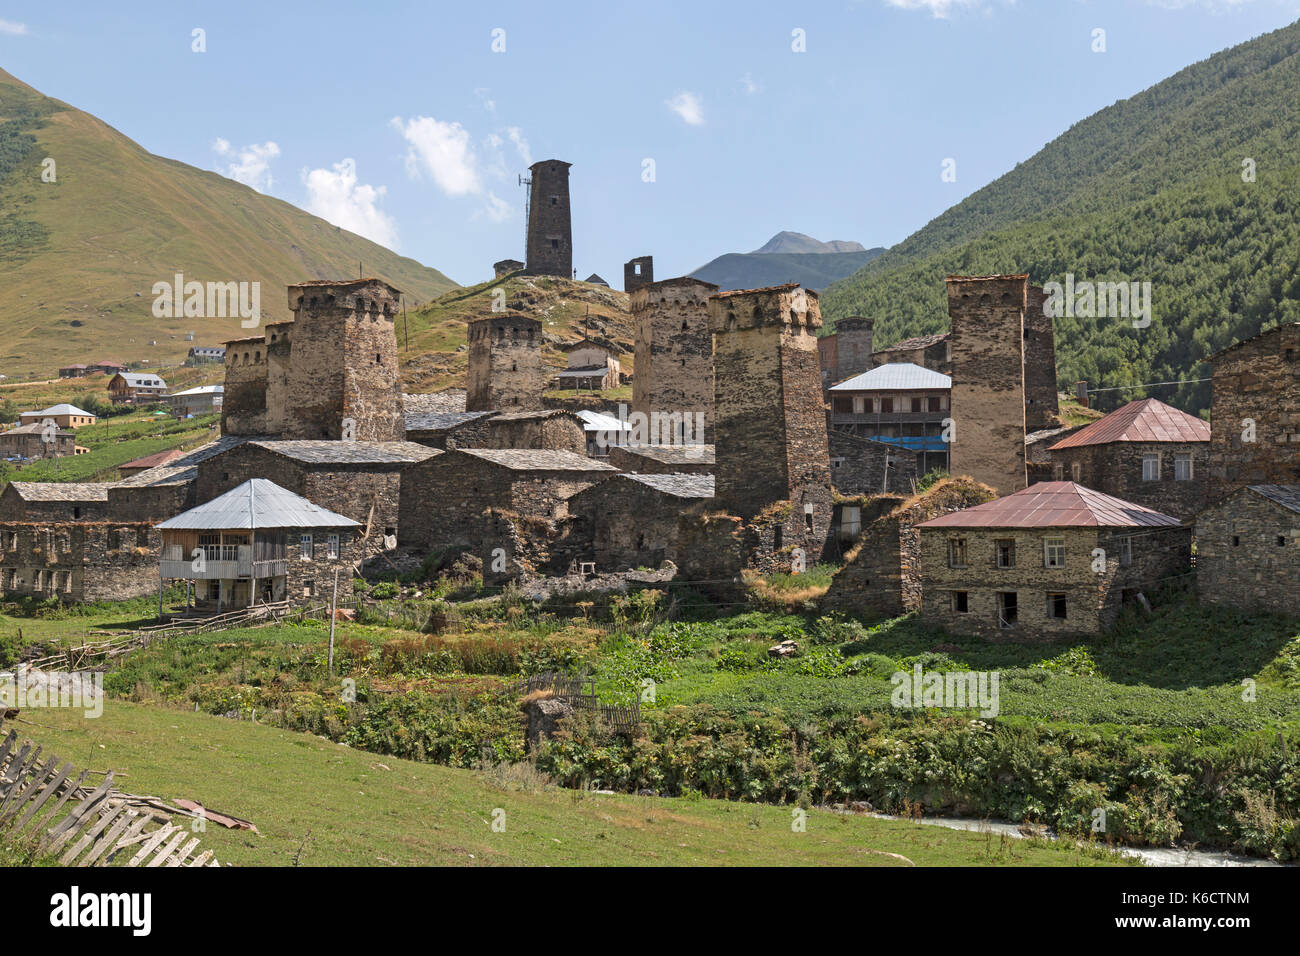 La ville d'Ushguli Svaneti dans la région de l'Arménie. Banque D'Images